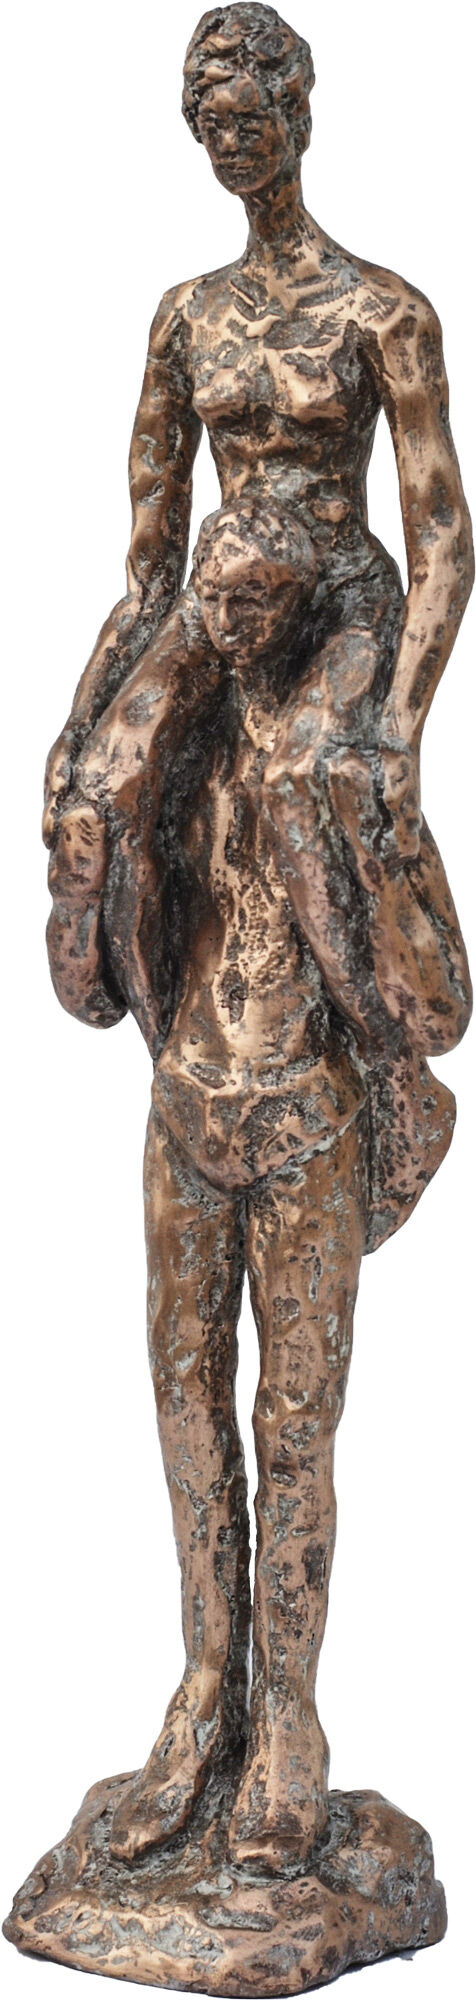 Sculpture "Piggyback" (2017), bronze von Dagmar Vogt